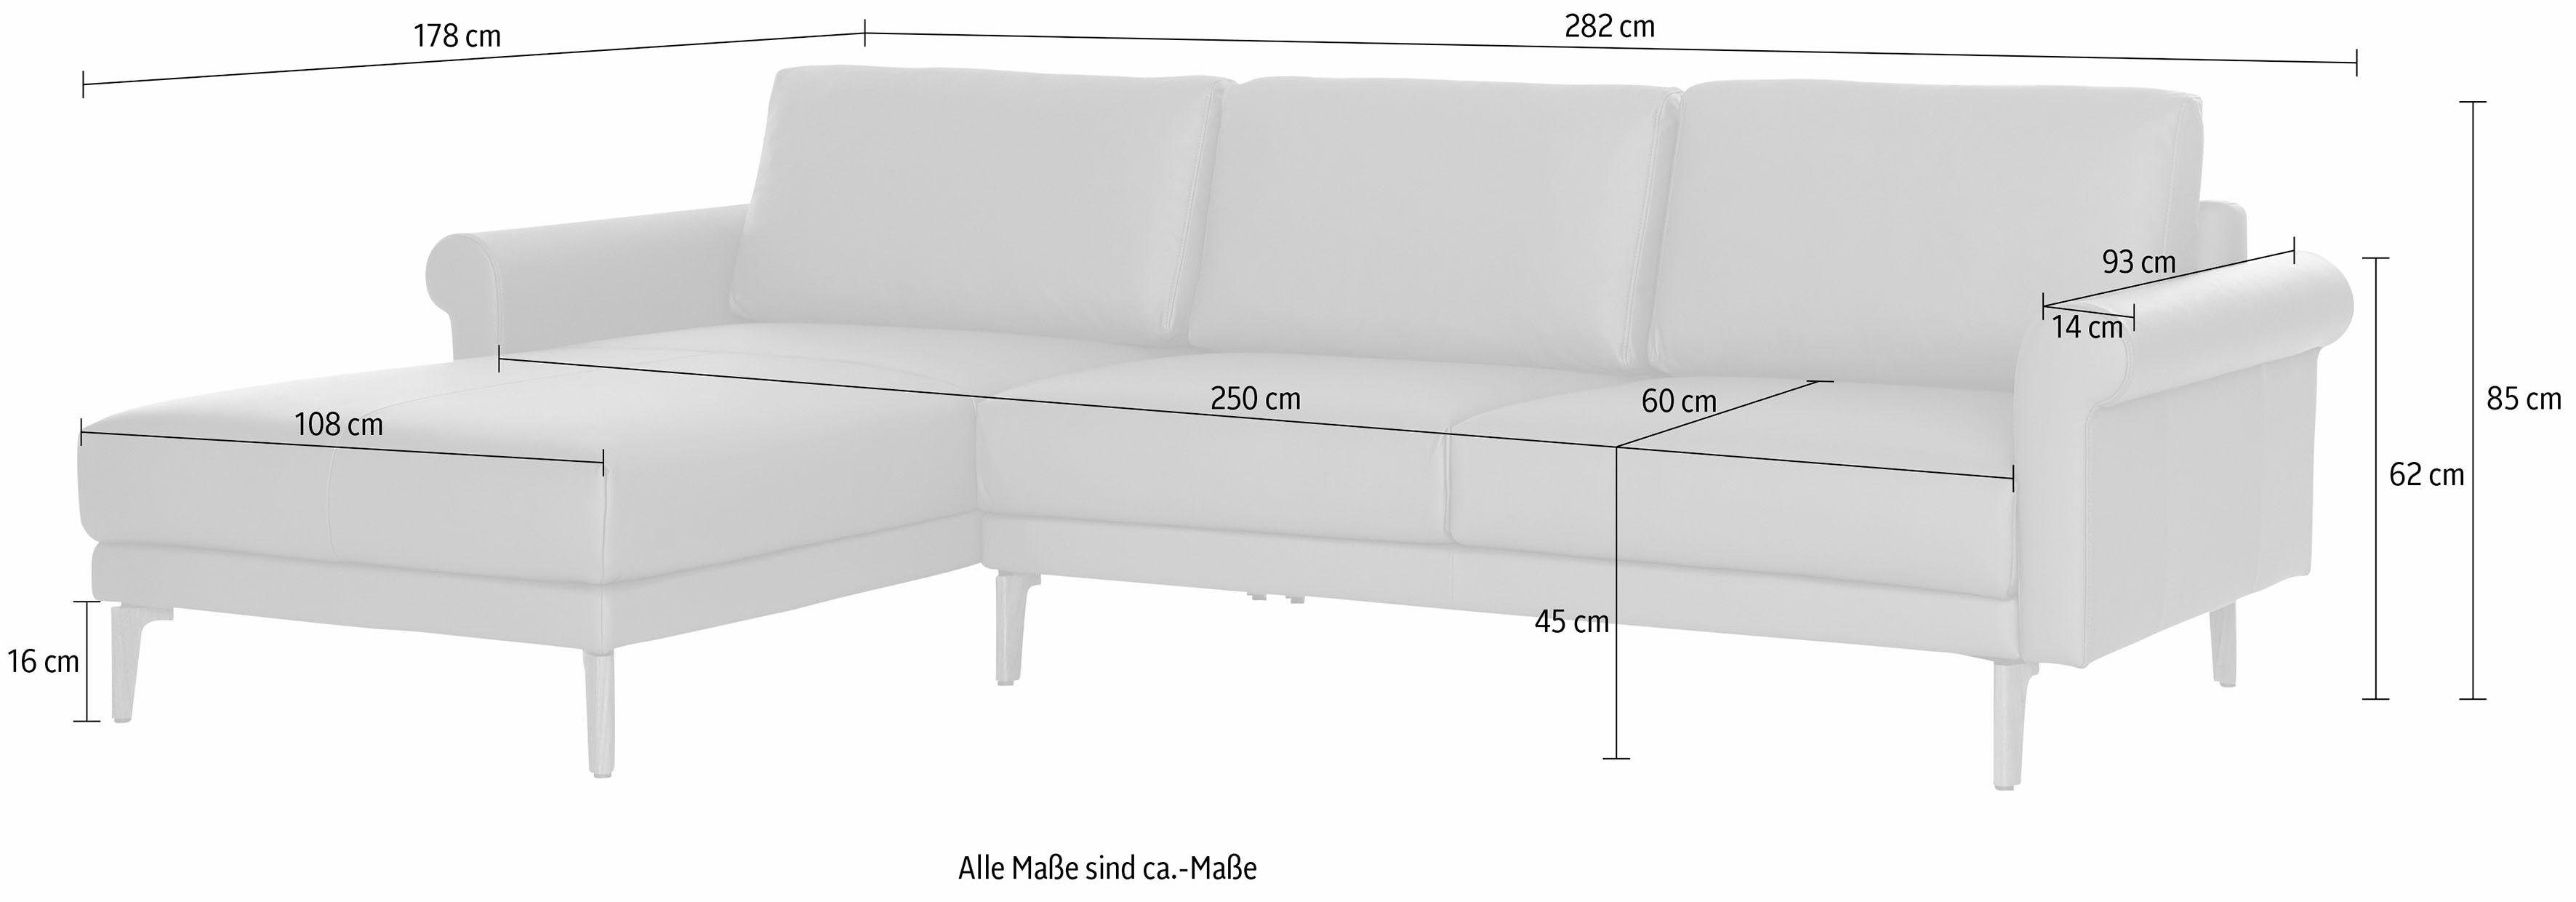 Armlehne sofa hs.450, cm, 282 Landhaus, hülsta modern Schnecke Breite Ecksofa Nussbaum Fuß